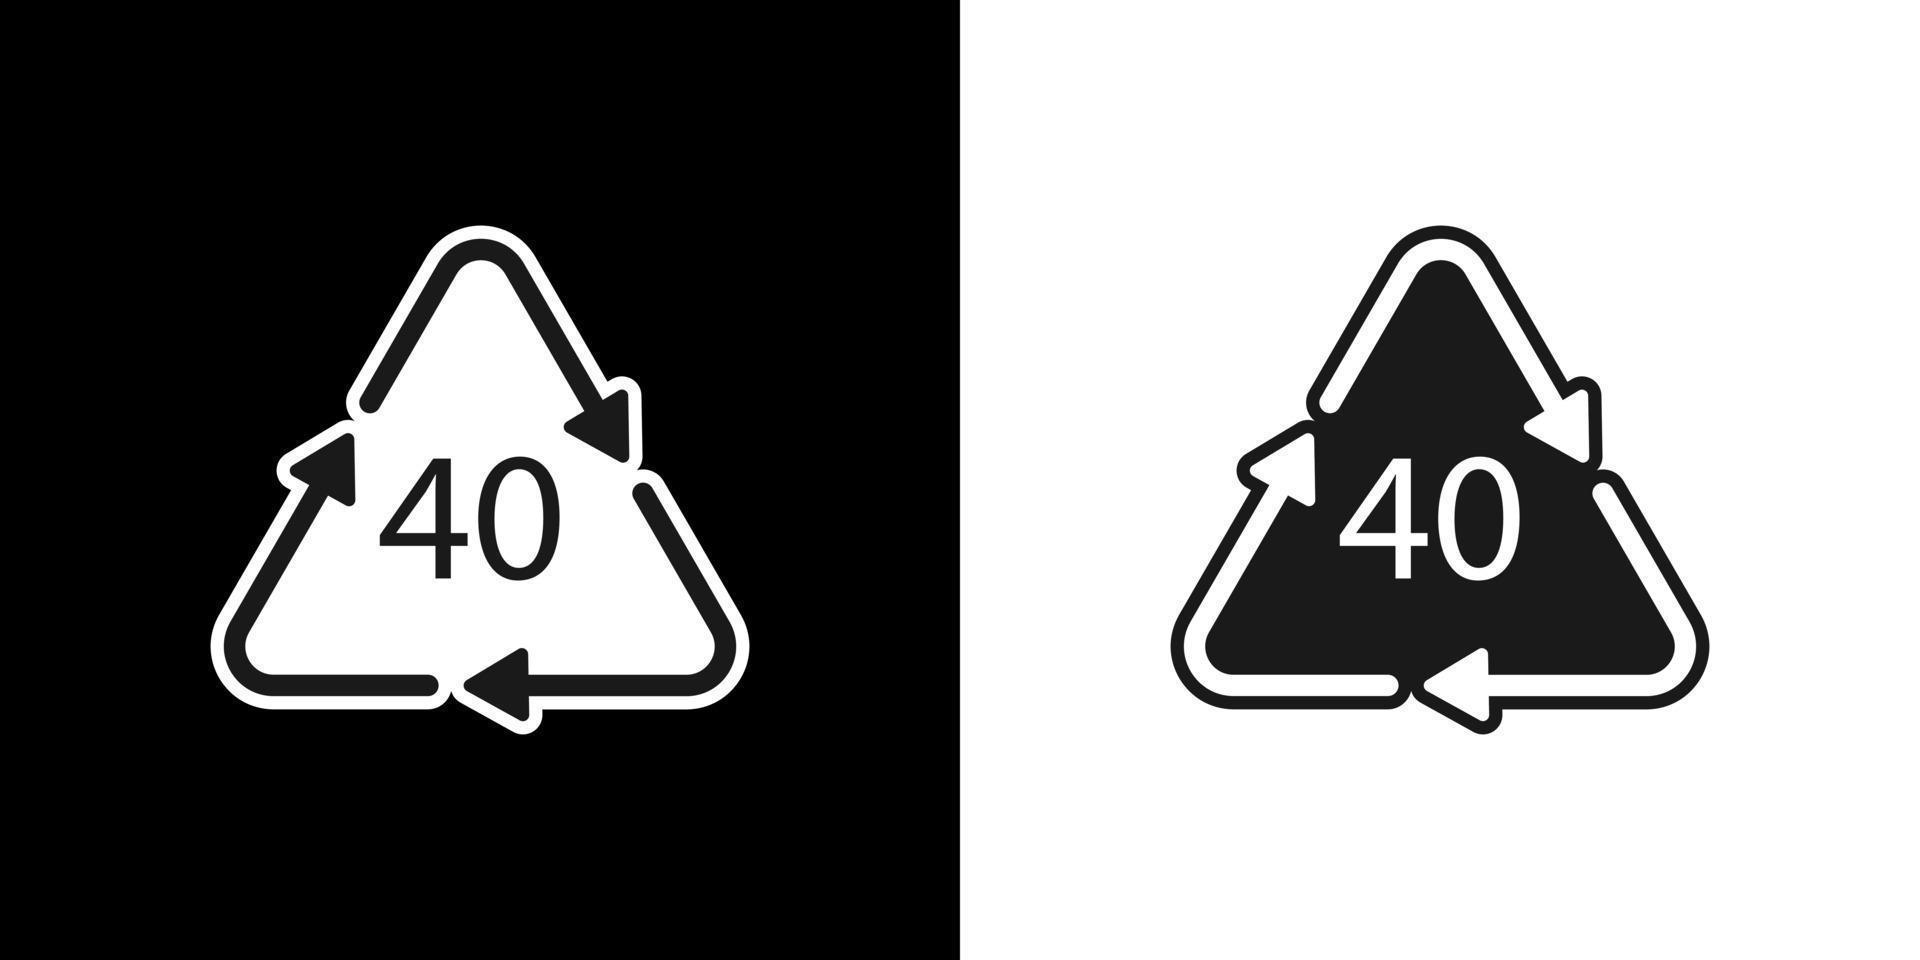 símbolo de reciclagem de plástico fe 40, plástico de embalagem. ilustração vetorial vetor